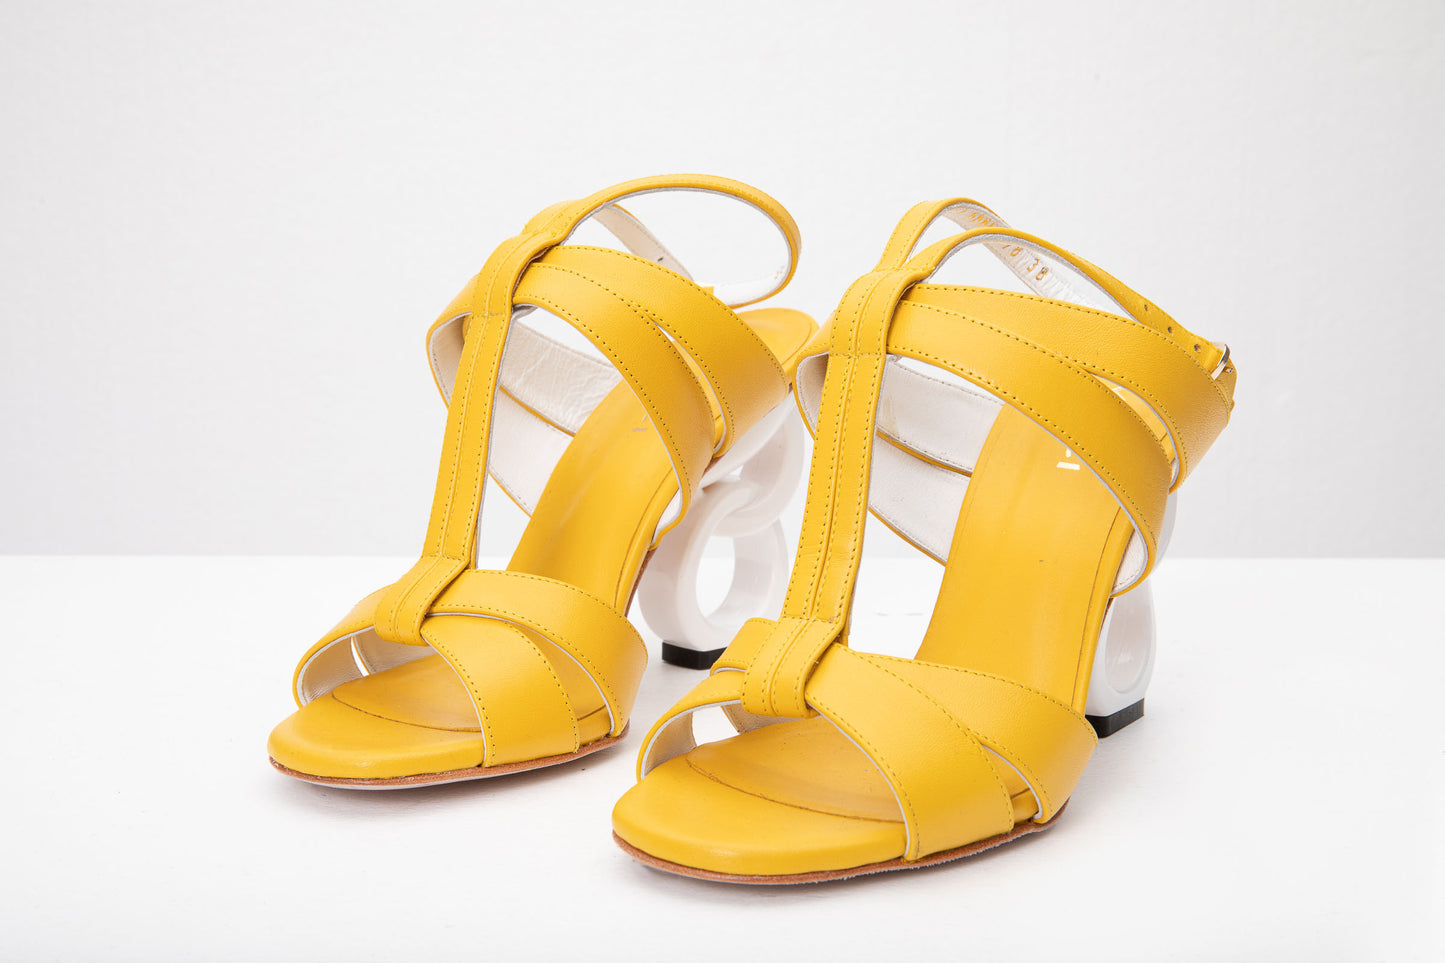 The Duffryn Yellow T-Strap Leather Women Sandal